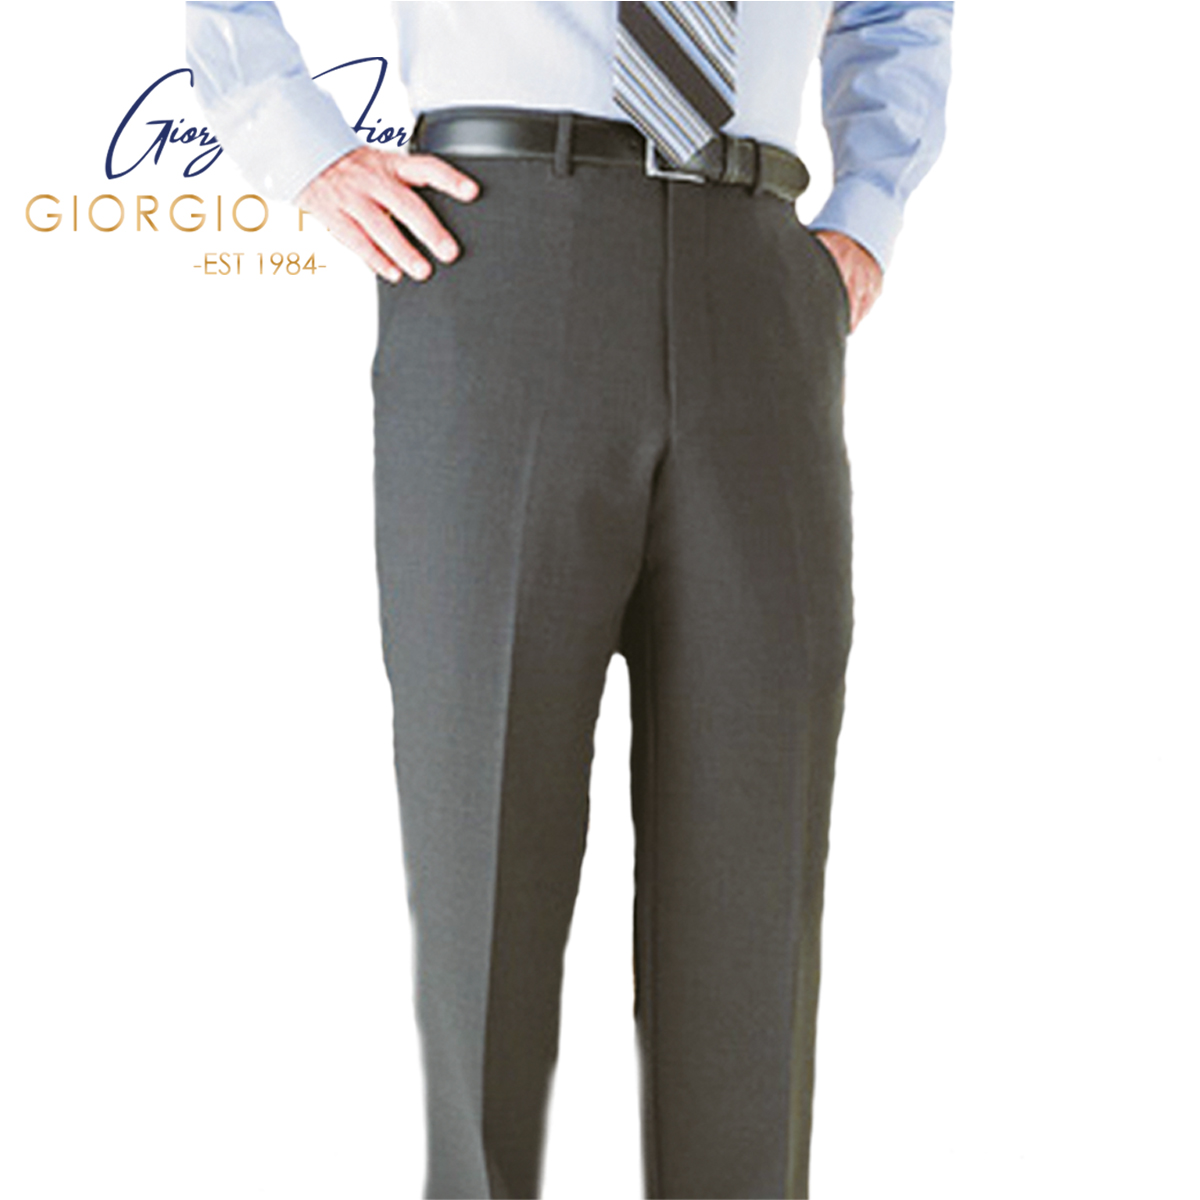 Giorgio Fiorelli Flat Front Trousers in 5 Colors in CA, NY, NJ, - Moda ...